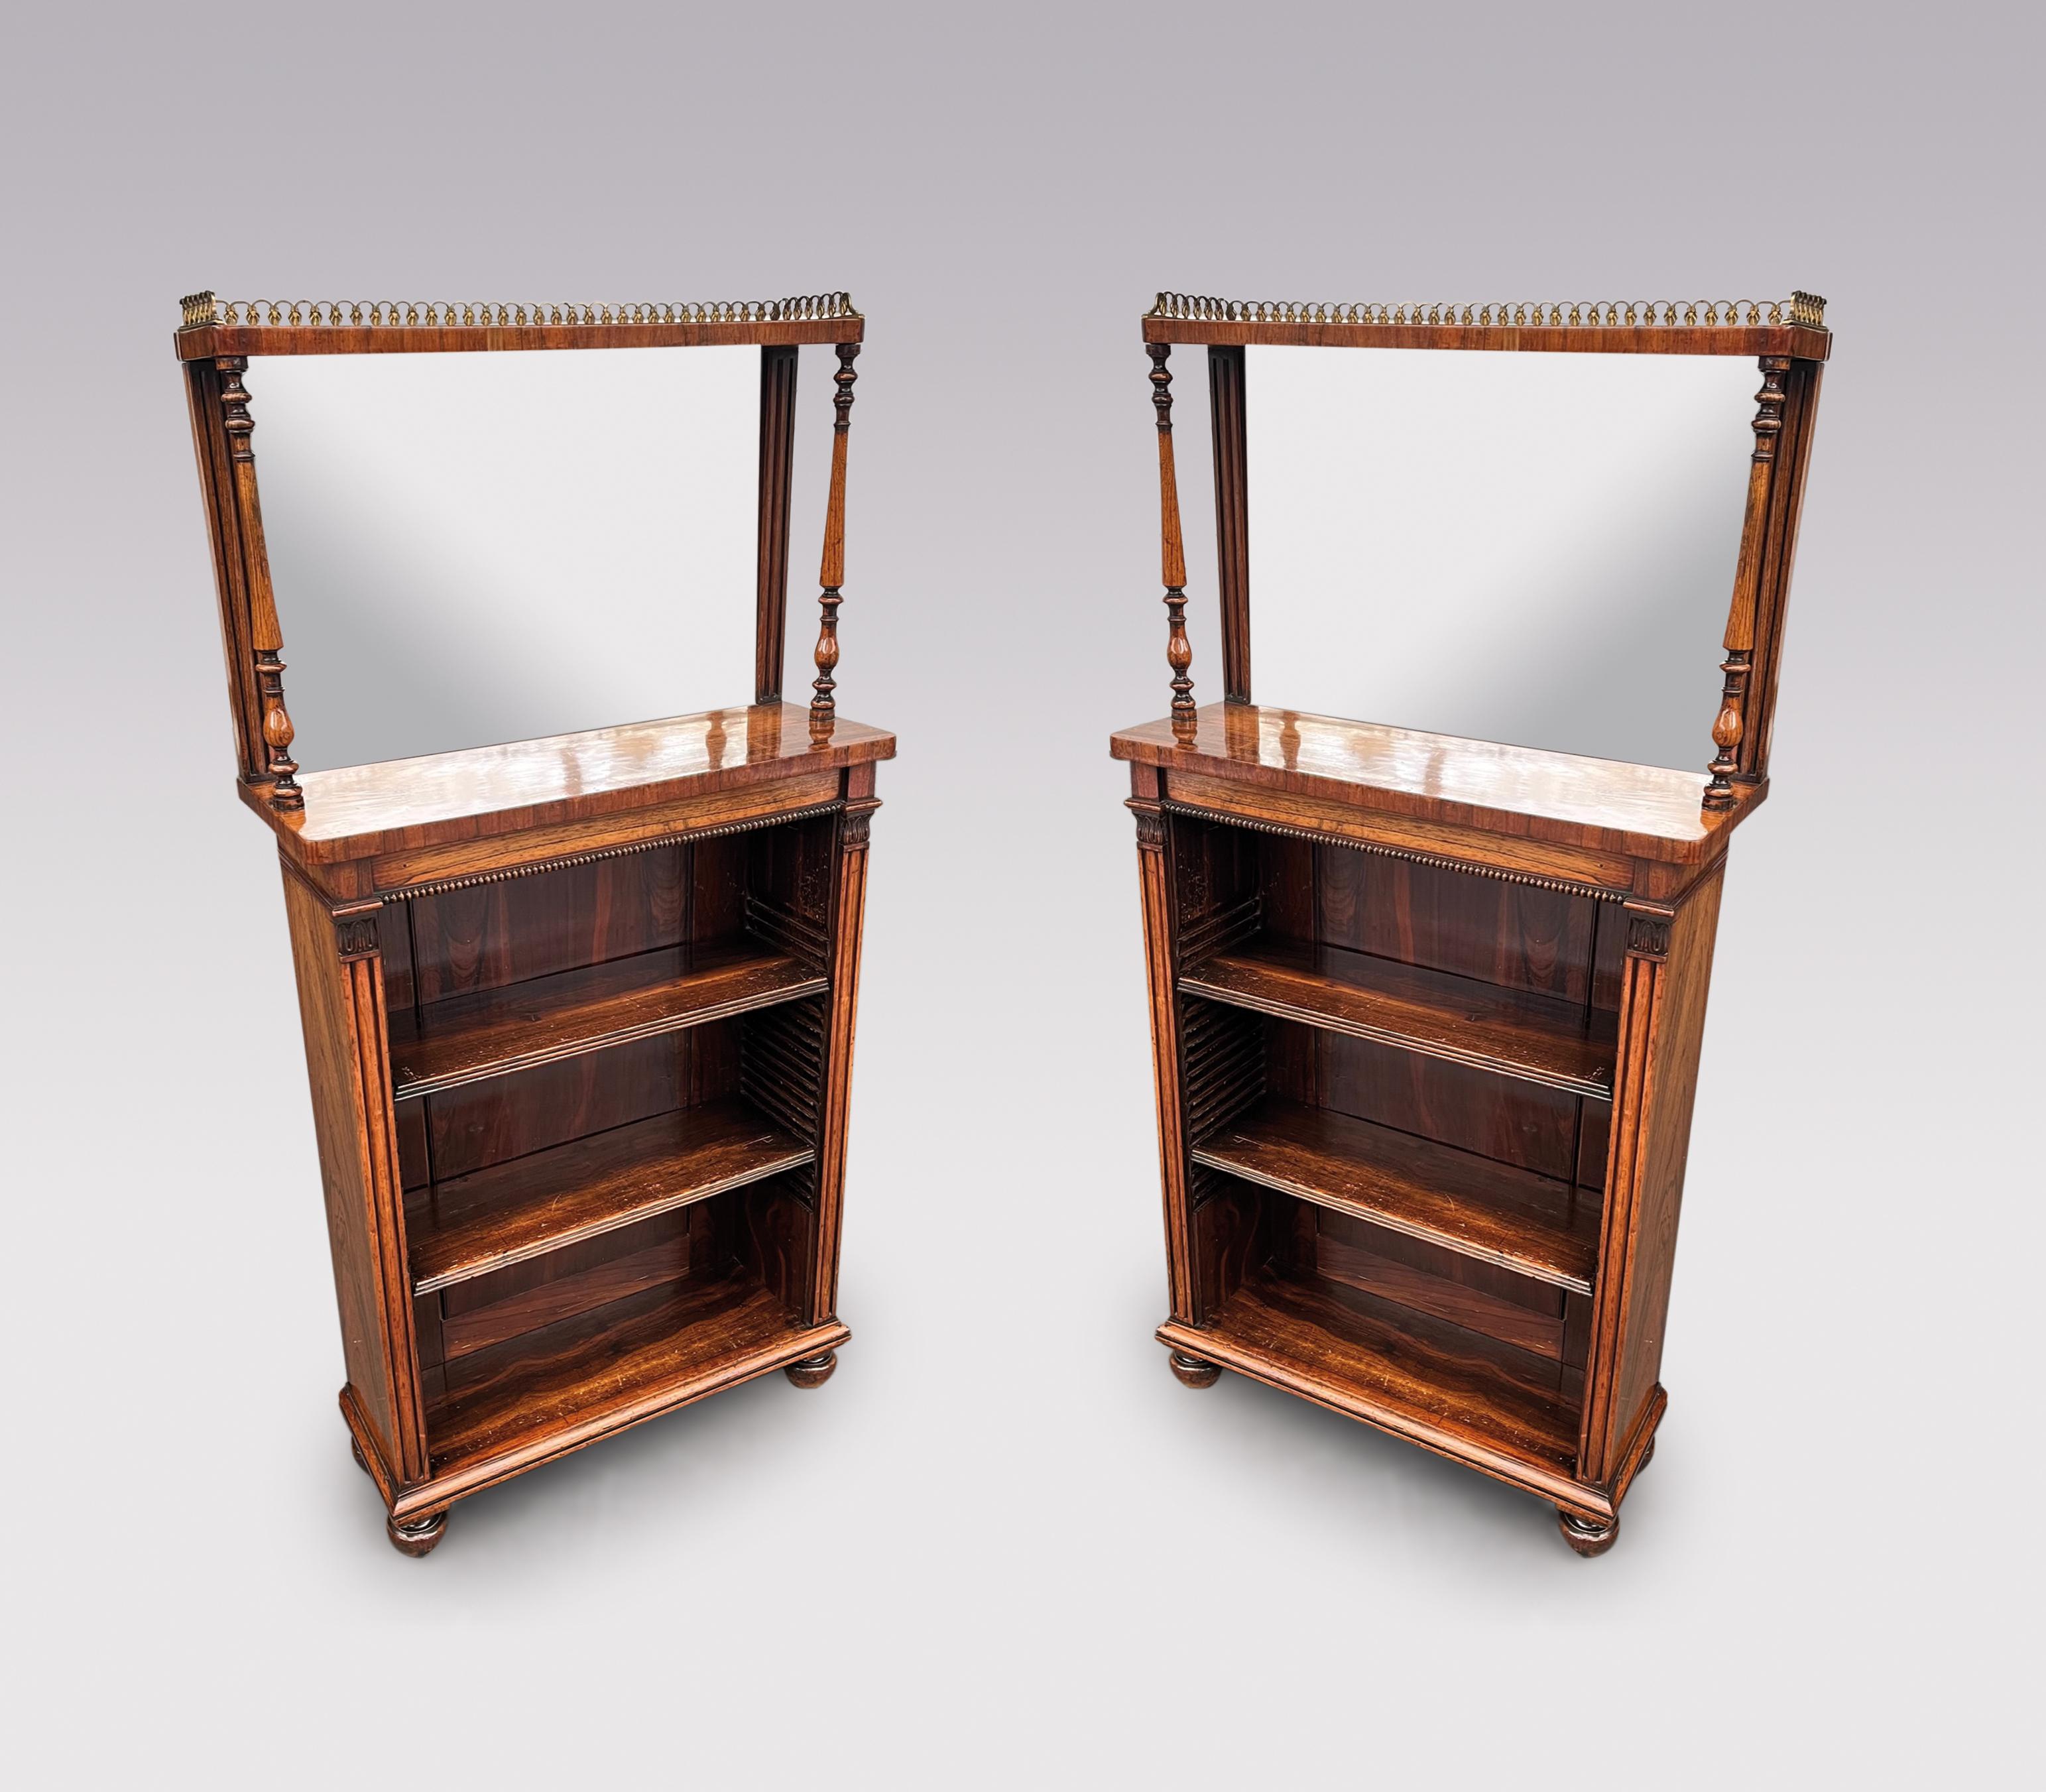 Une paire de bibliothèques ouvertes en palissandre figuré du début du 19ème siècle, de proportions inhabituelles, à la manière de Gillows de Lancaster, avec des parties supérieures à miroir en laiton, au-dessus de frises perlées et d'étagères